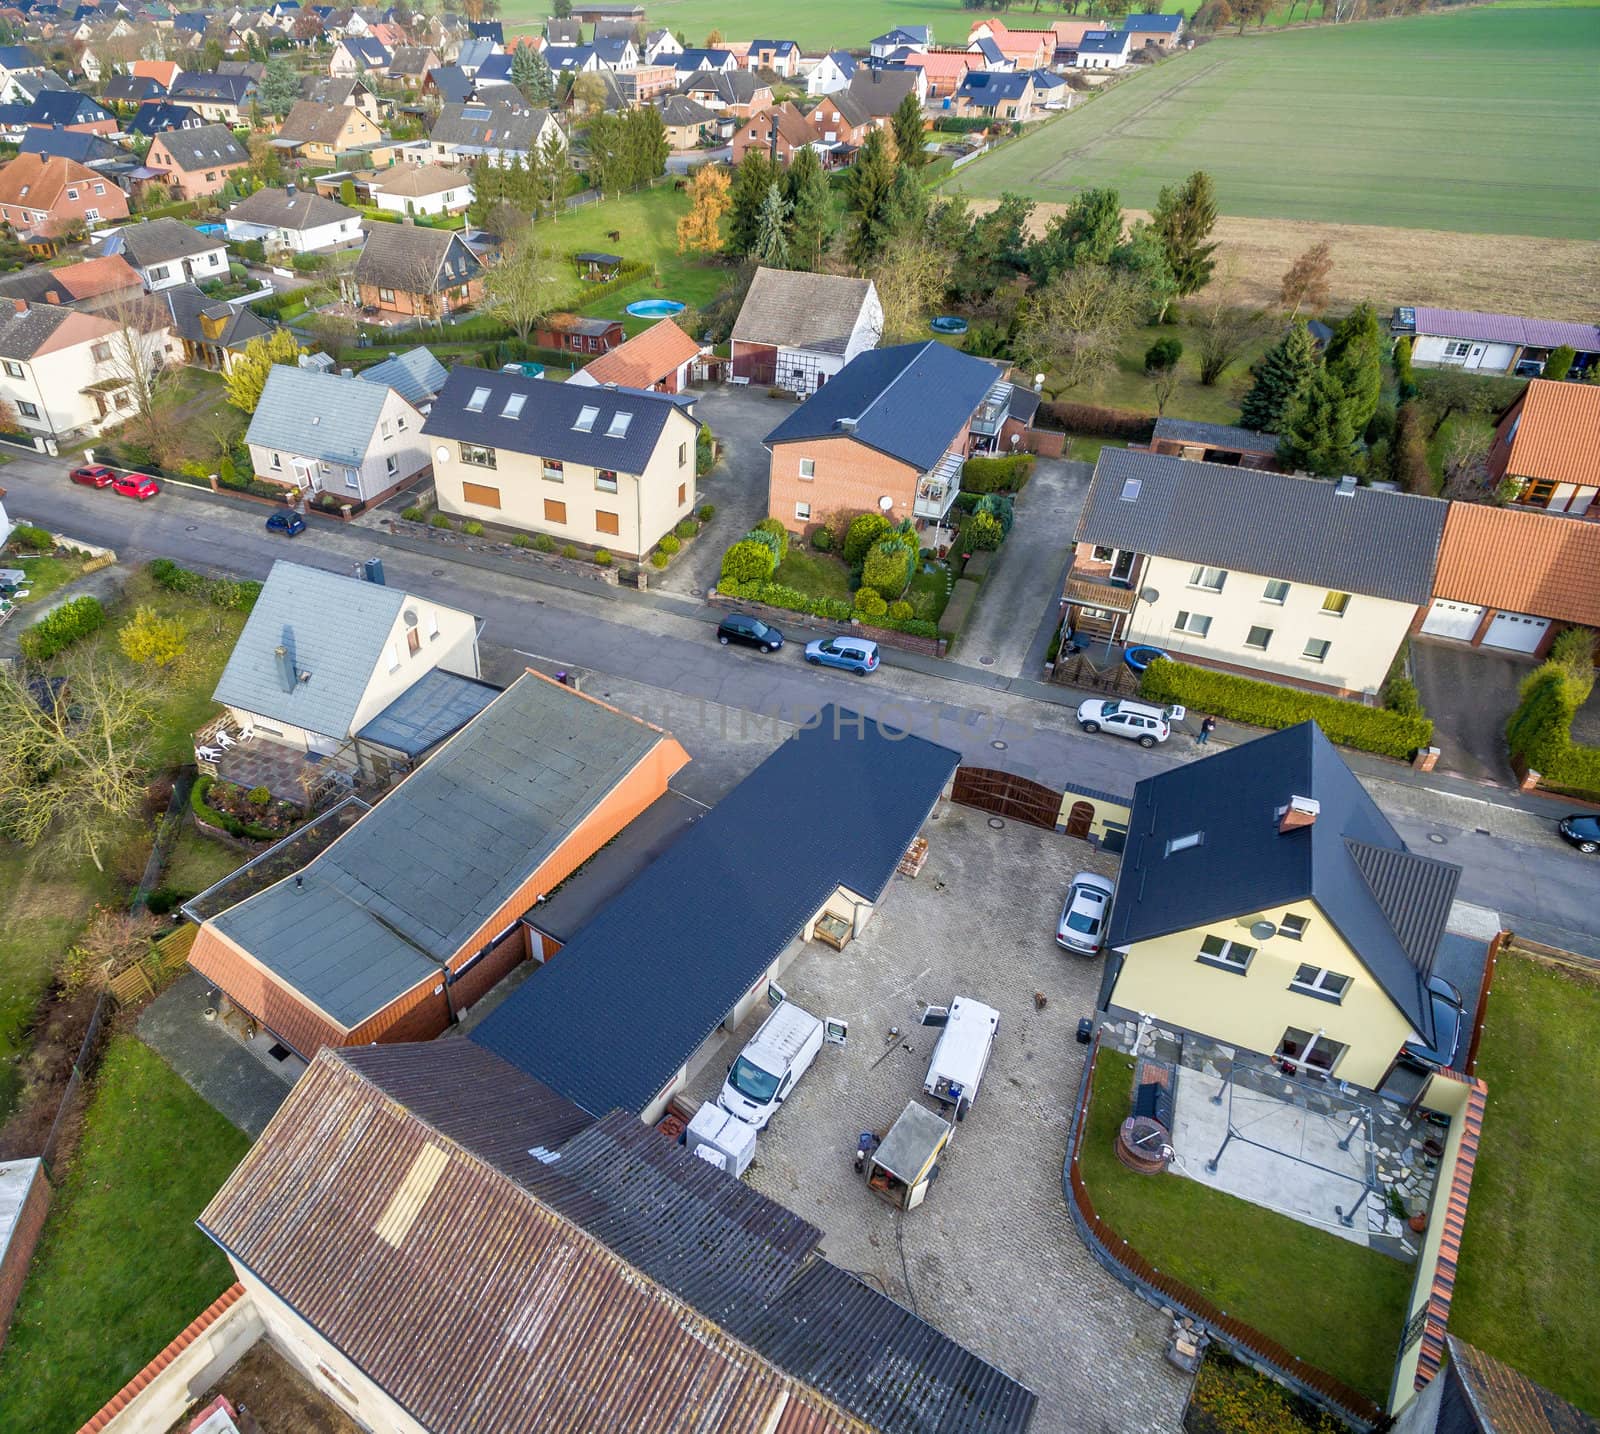 Bebauung mit Einfamilienhäusern am Rand eines Dorfes in der Nähe von Wolfsburg, Deutschland, Luftaufnahme mit der Drohne, schräger Aufnahmewinkel